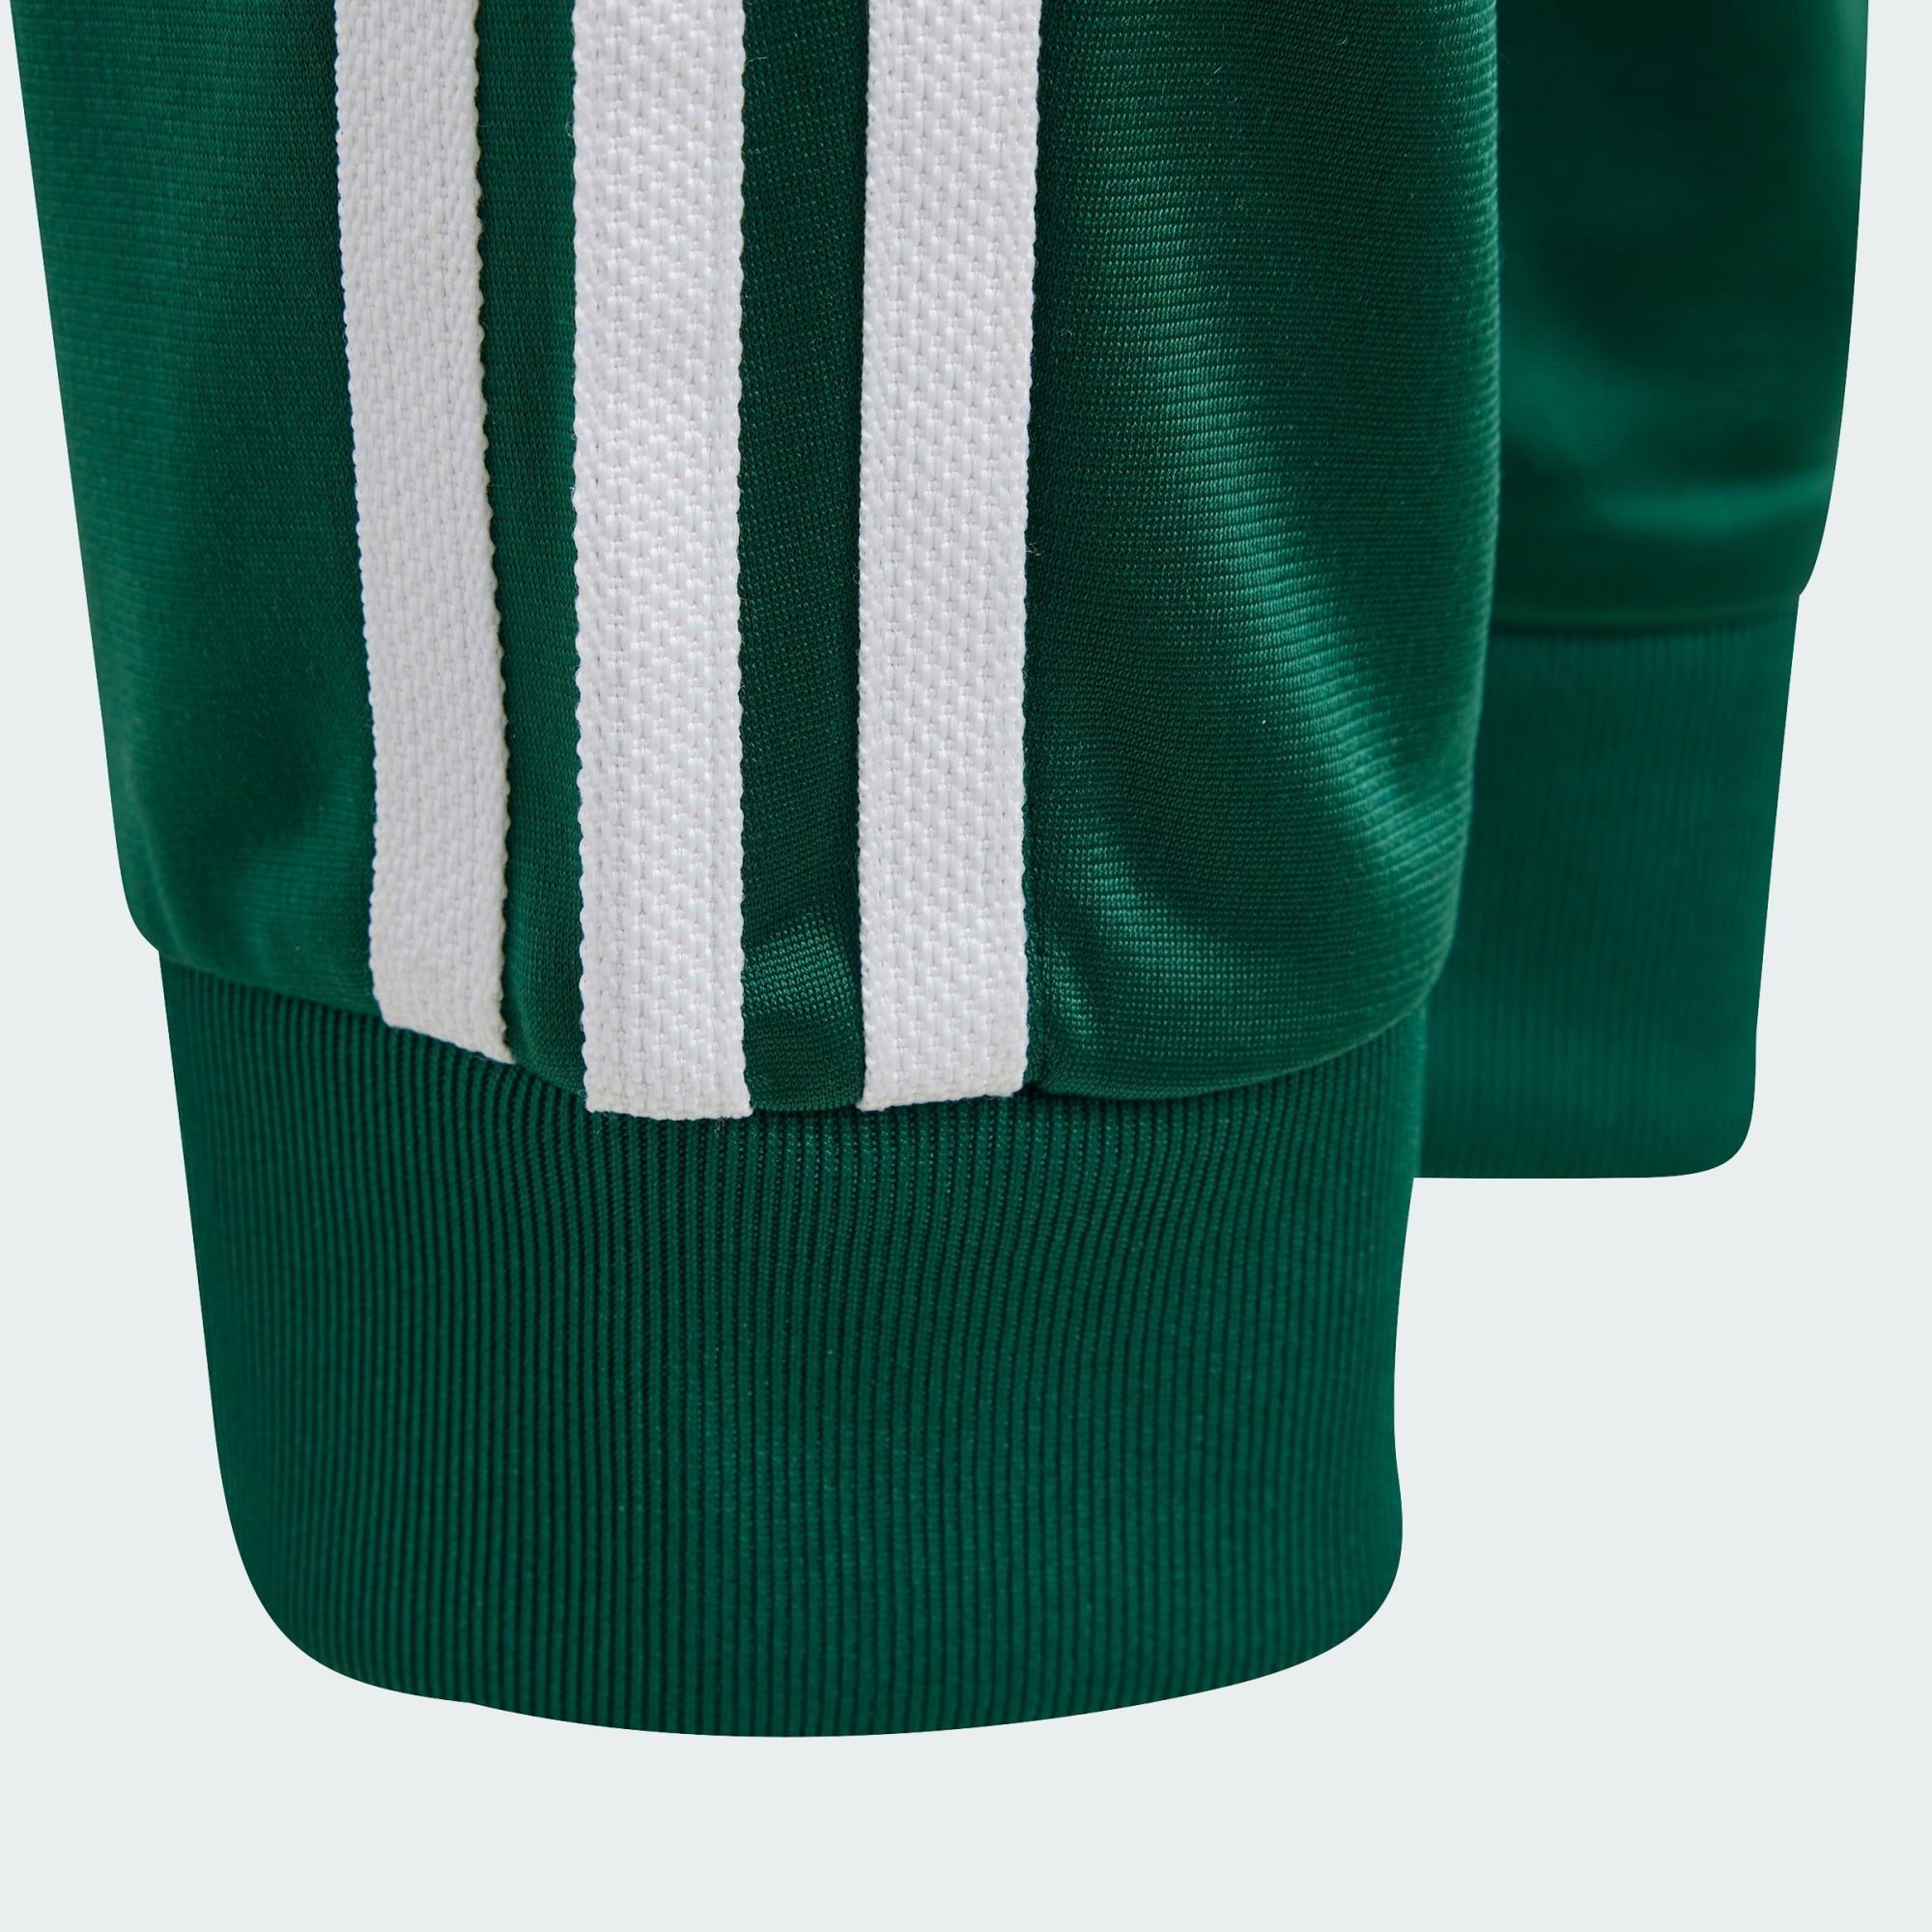 adidas Originals Leichtathletik-Hose ADICOLOR SST Collegiate Green TRAININGSHOSE